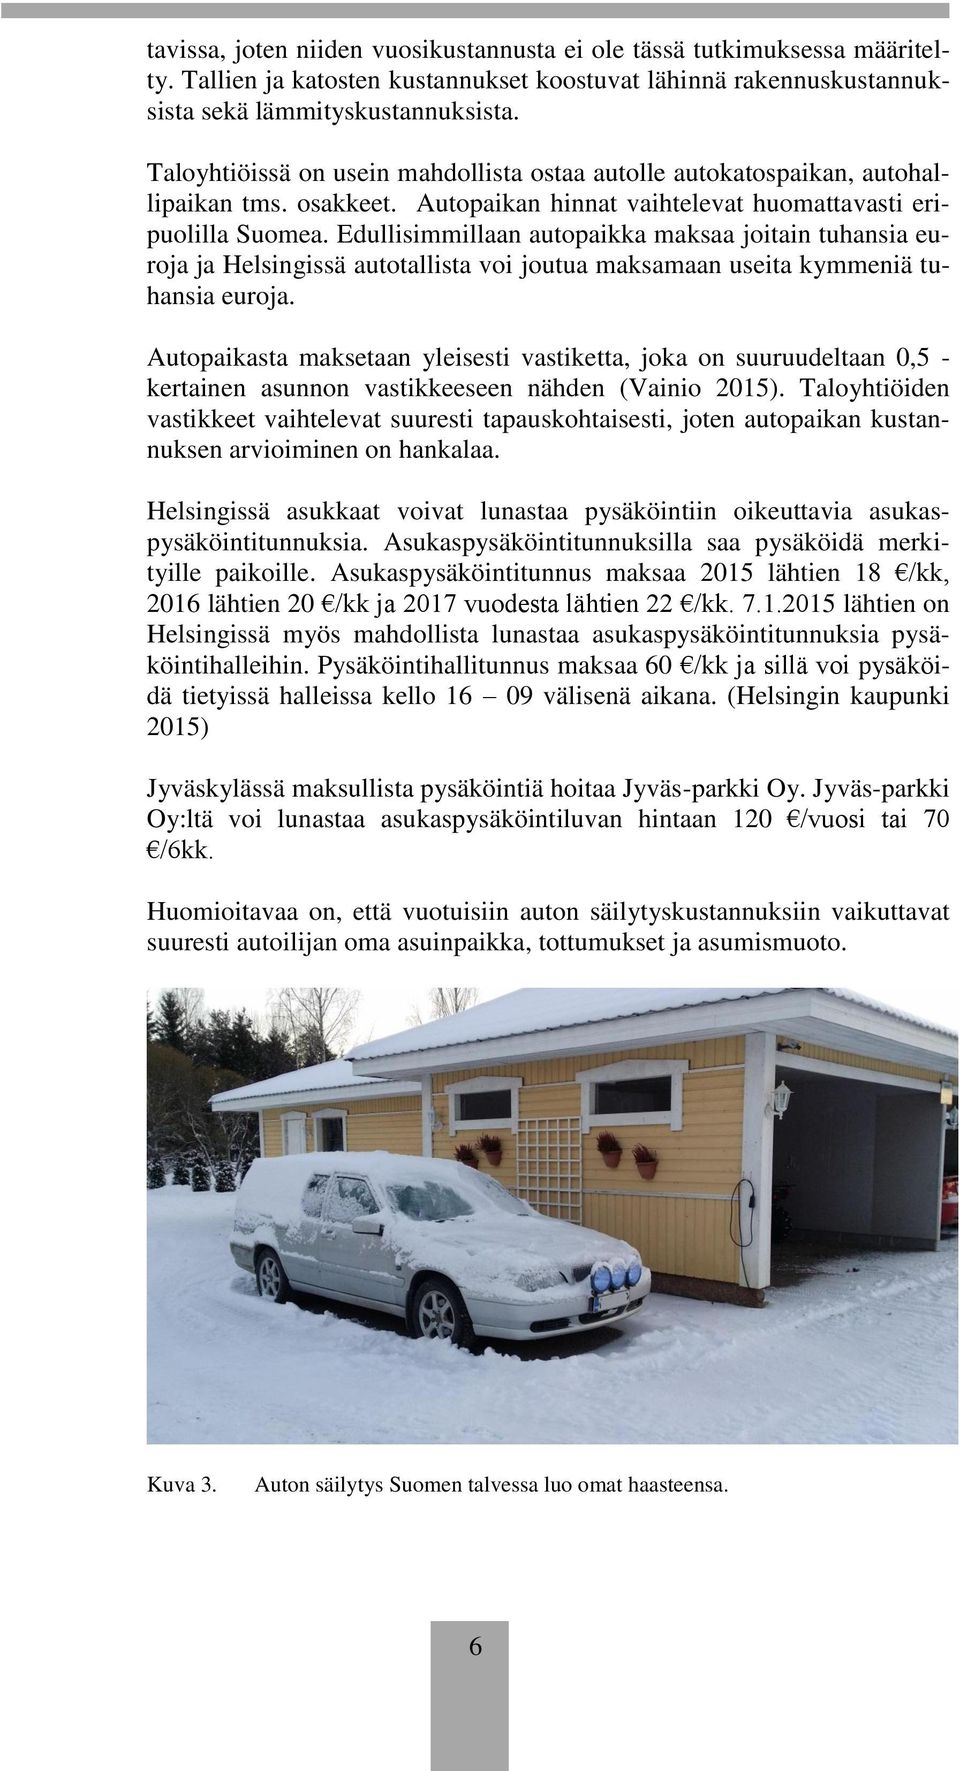 Edullisimmillaan autopaikka maksaa joitain tuhansia euroja ja Helsingissä autotallista voi joutua maksamaan useita kymmeniä tuhansia euroja.